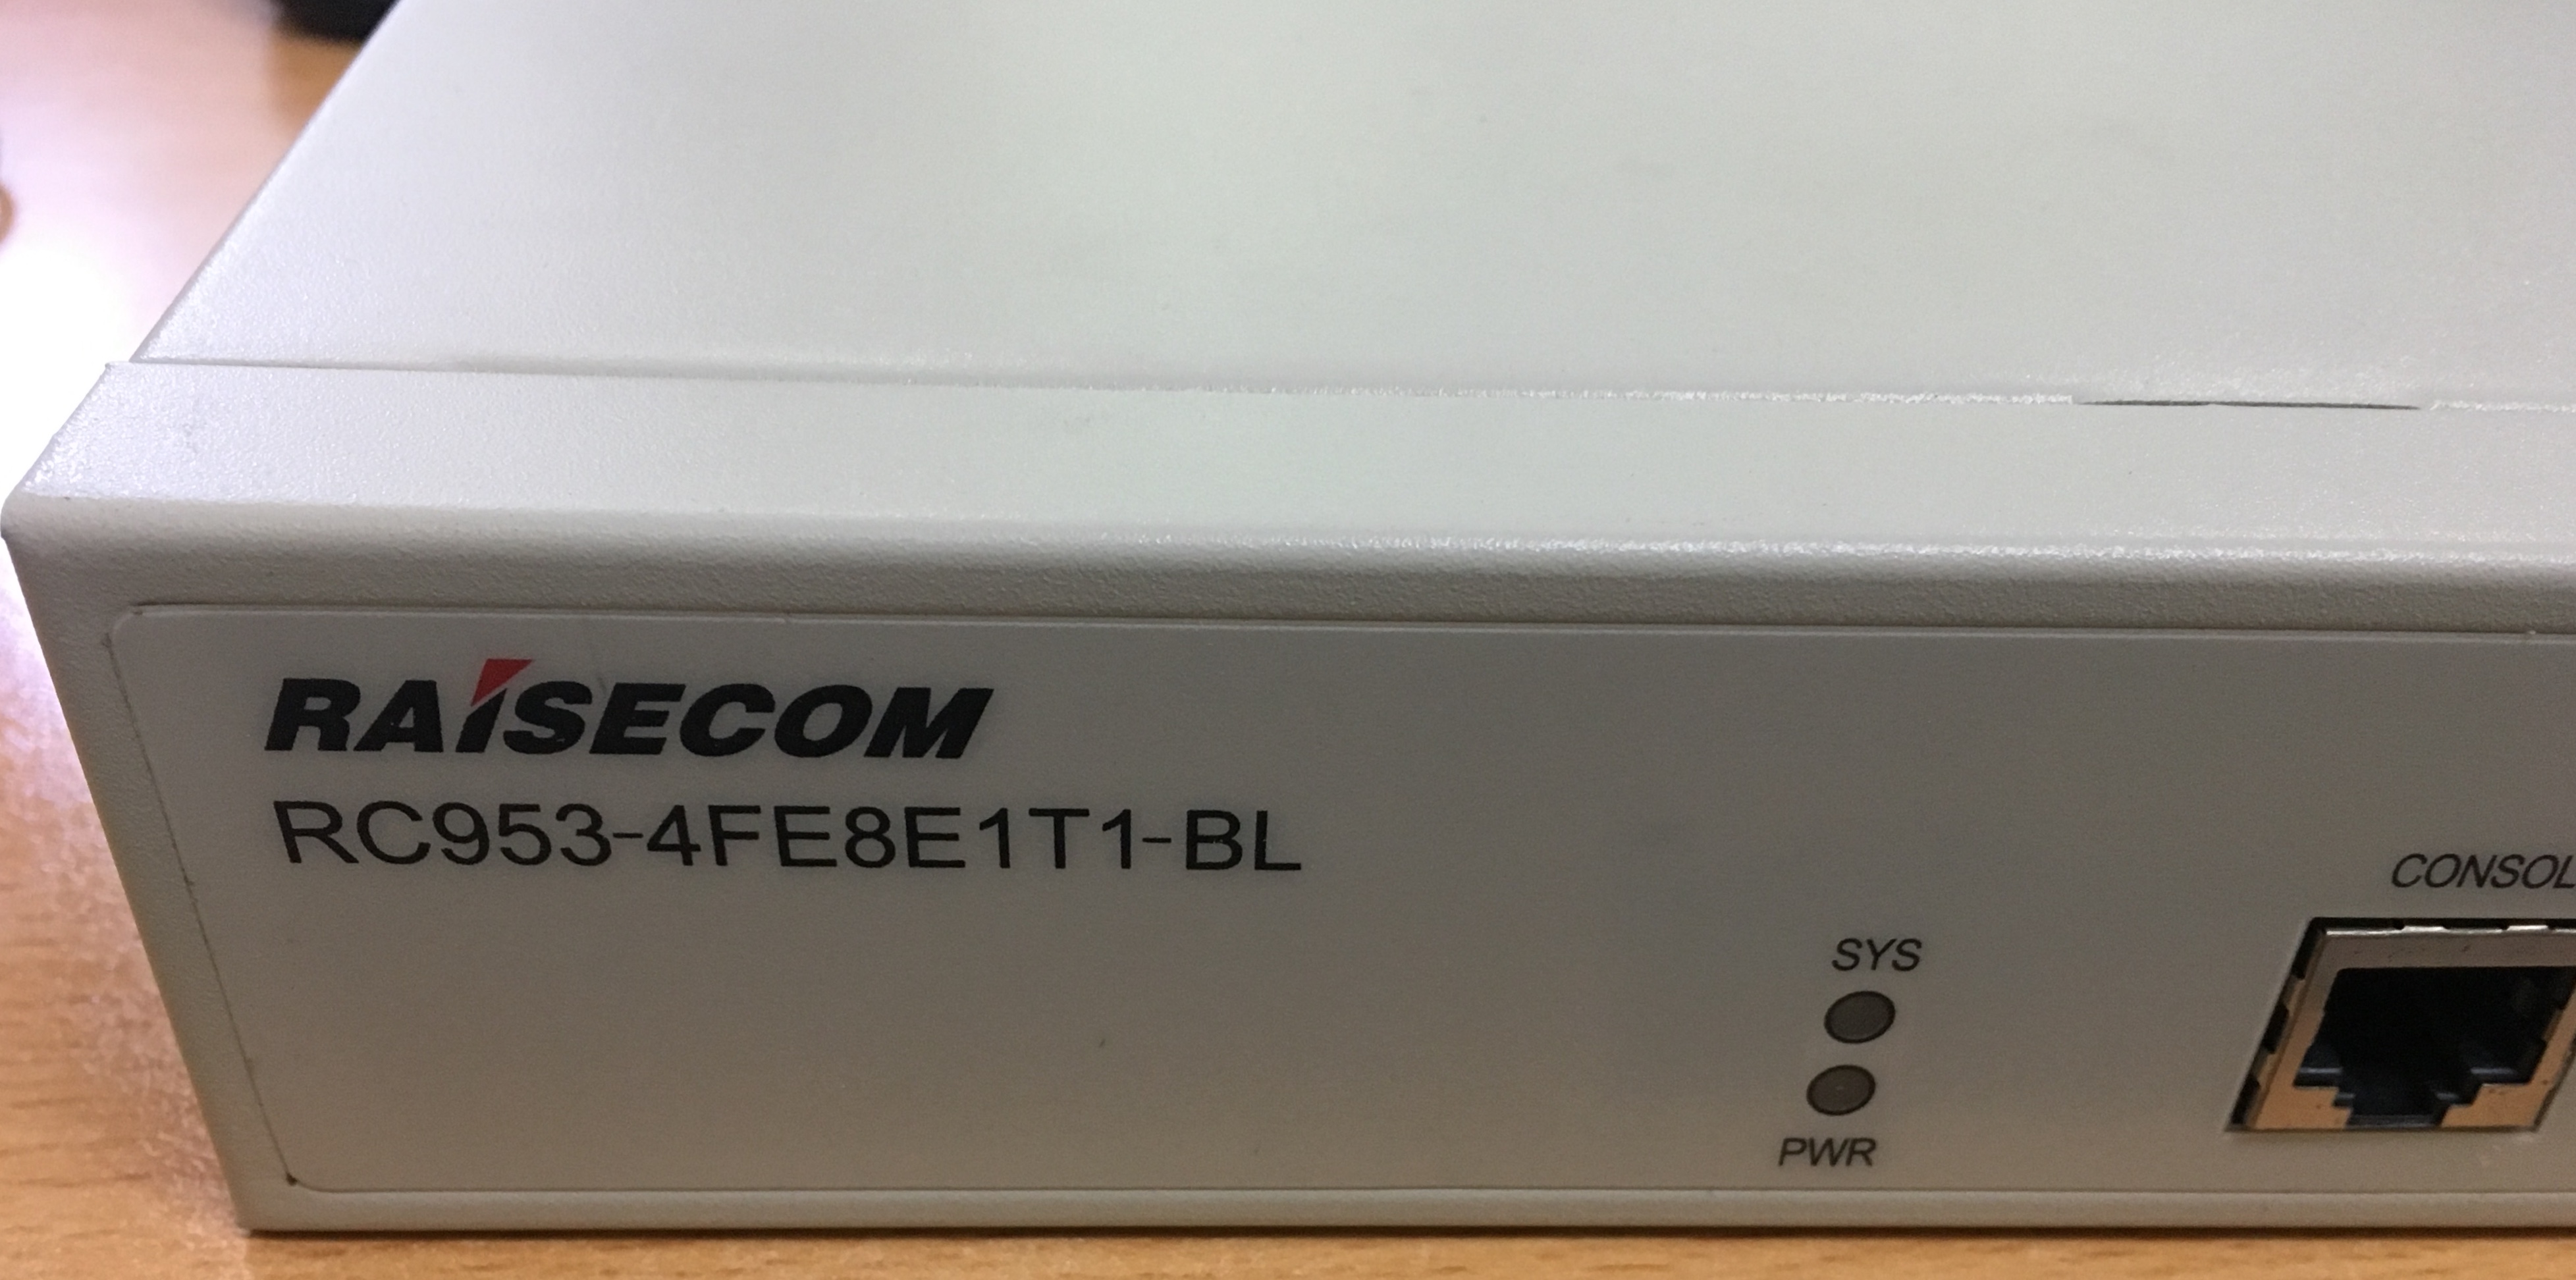 Thiết bị chuyển đổi Ethernet/E1 (Modem chuyển đổi 8E1/G703 sang FE (RC953-4FE8E1T1-BL-WP)